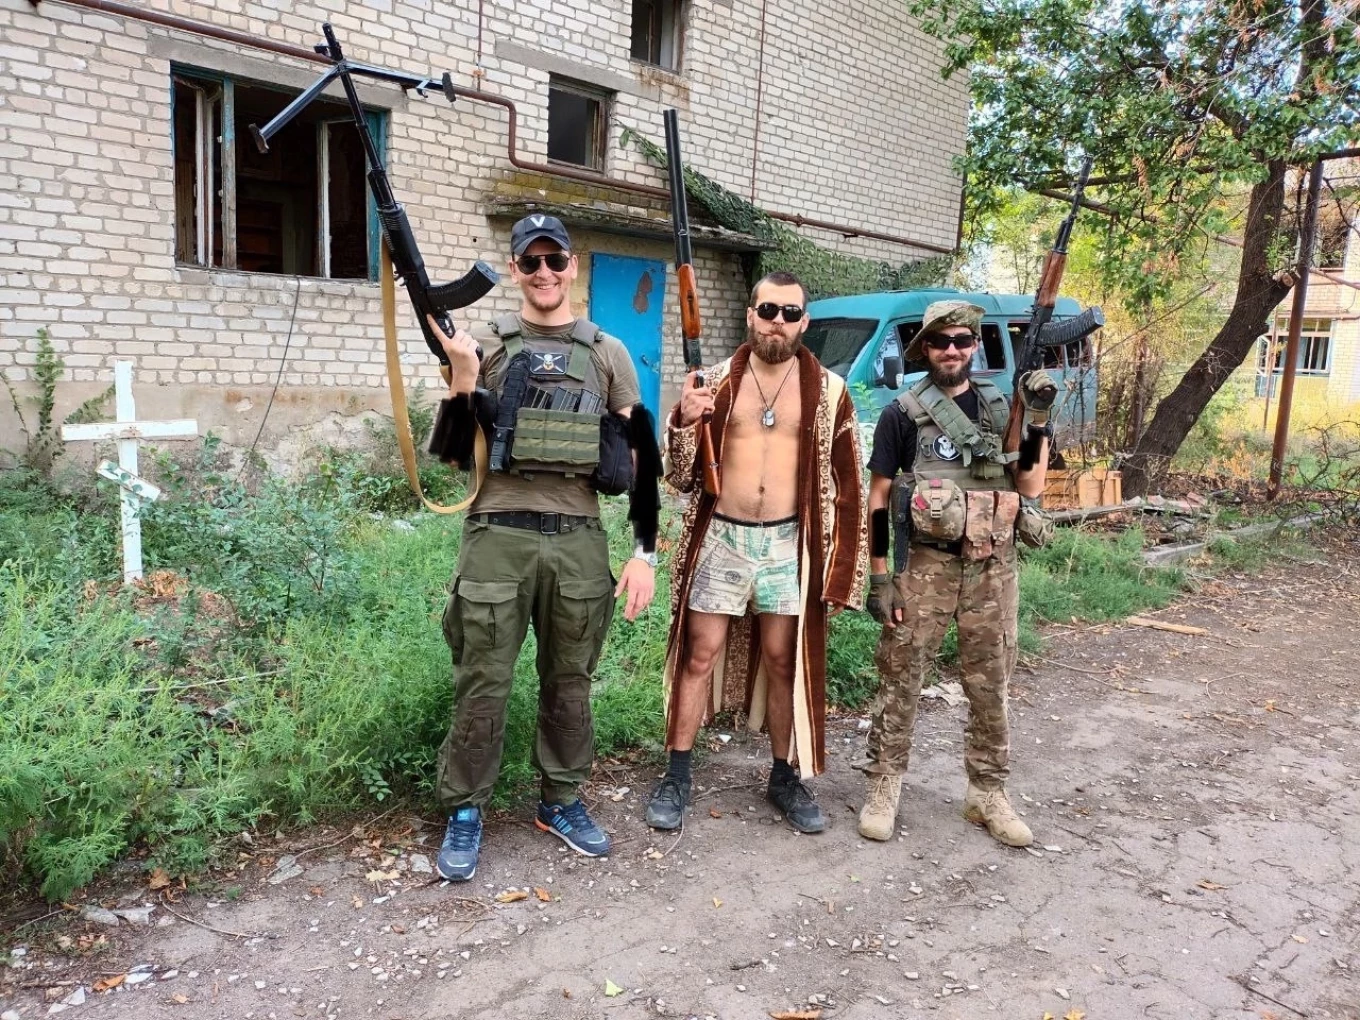 Rumeni e altri mercenari Wagner nel villaggio di Klynov vicino a Bakhmut, in Ucraina.  archivio personale